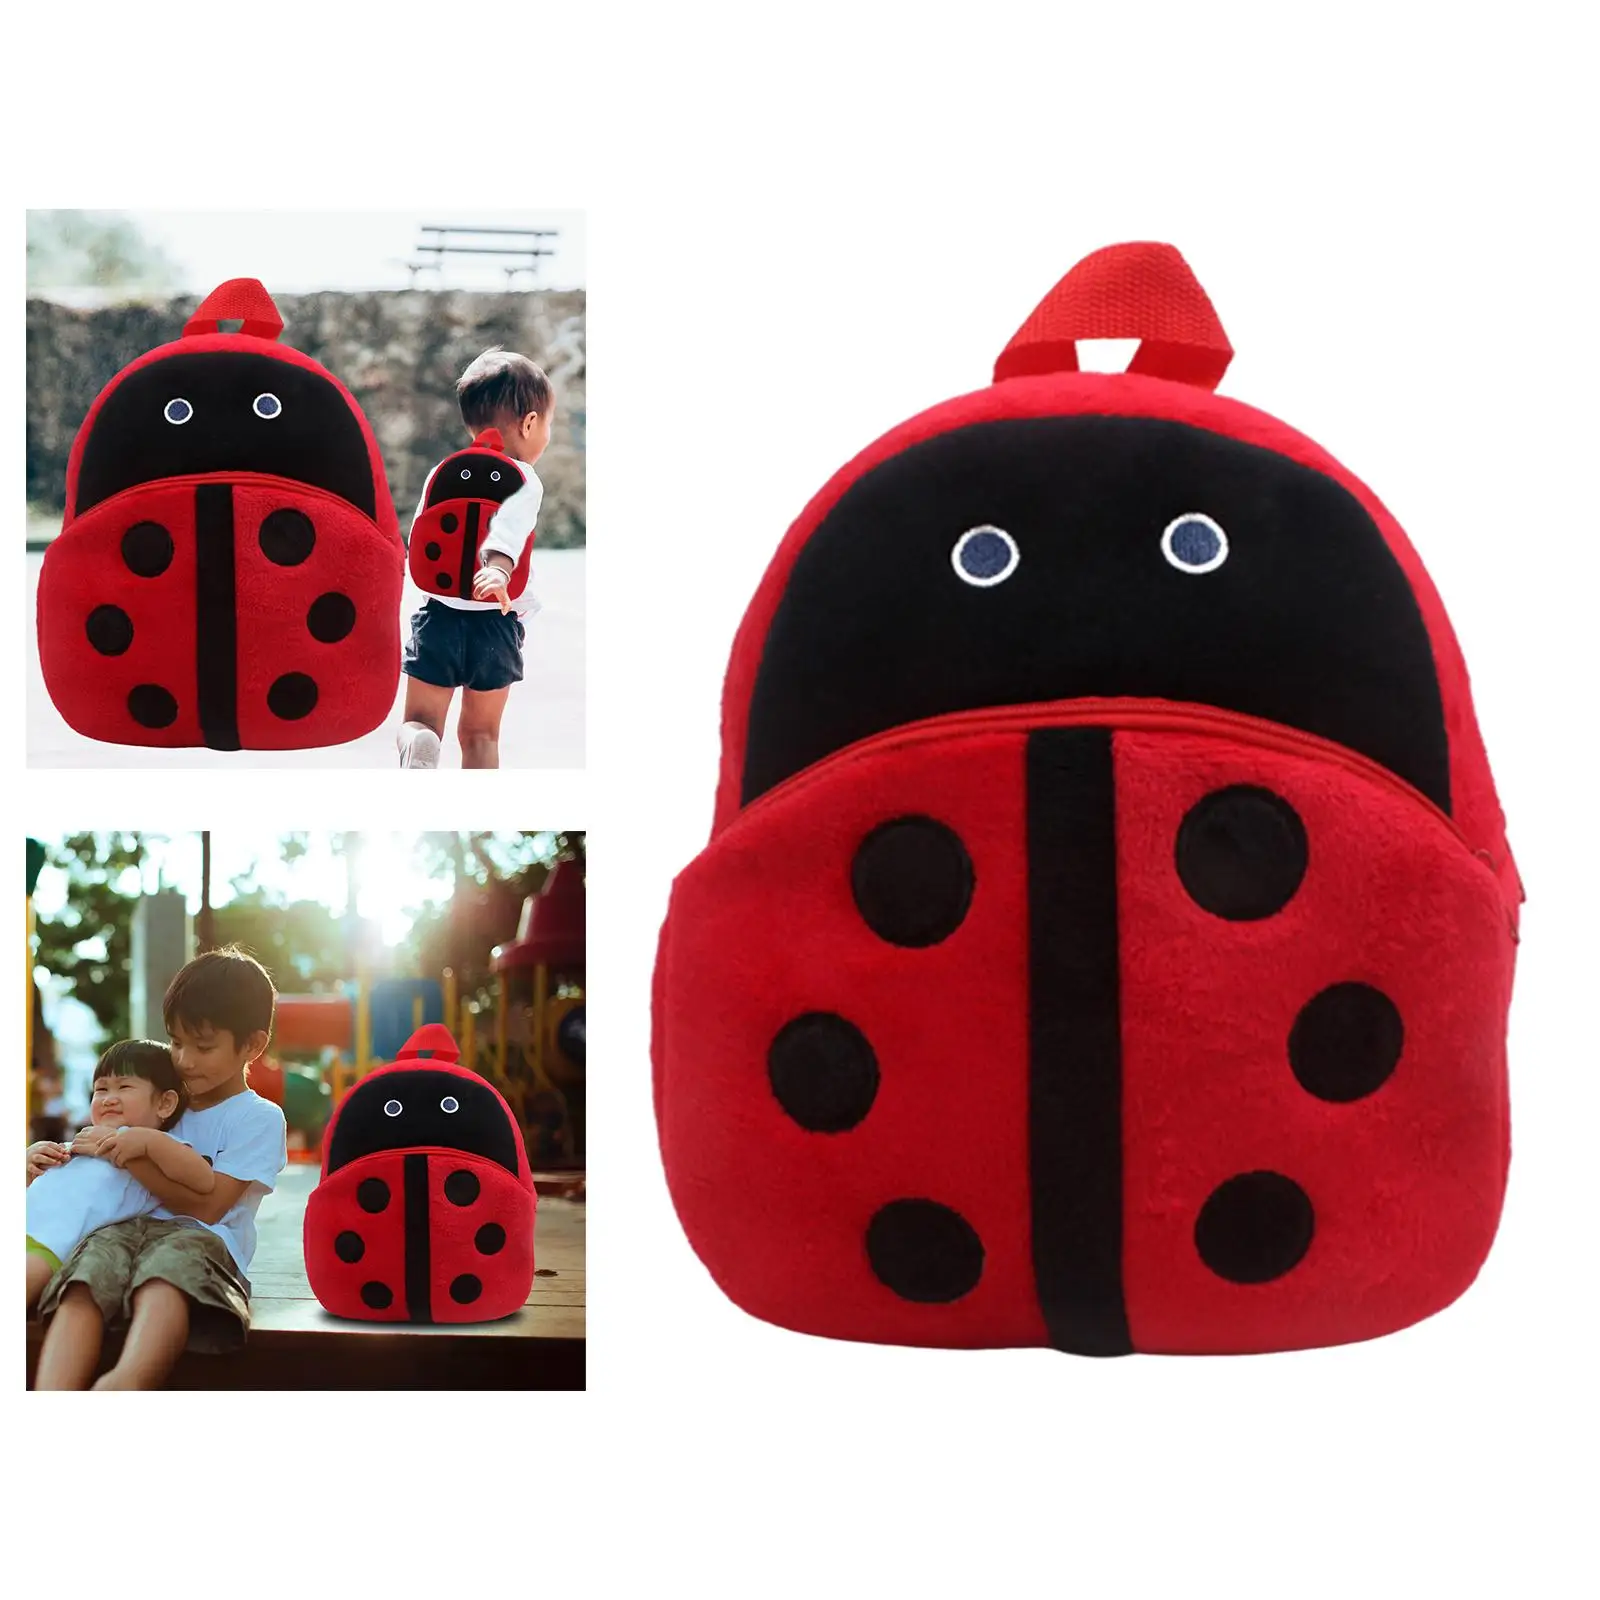 Toddler Animal Kid Backpack Small Children Plush Backpack for Outdoor Toddler Children